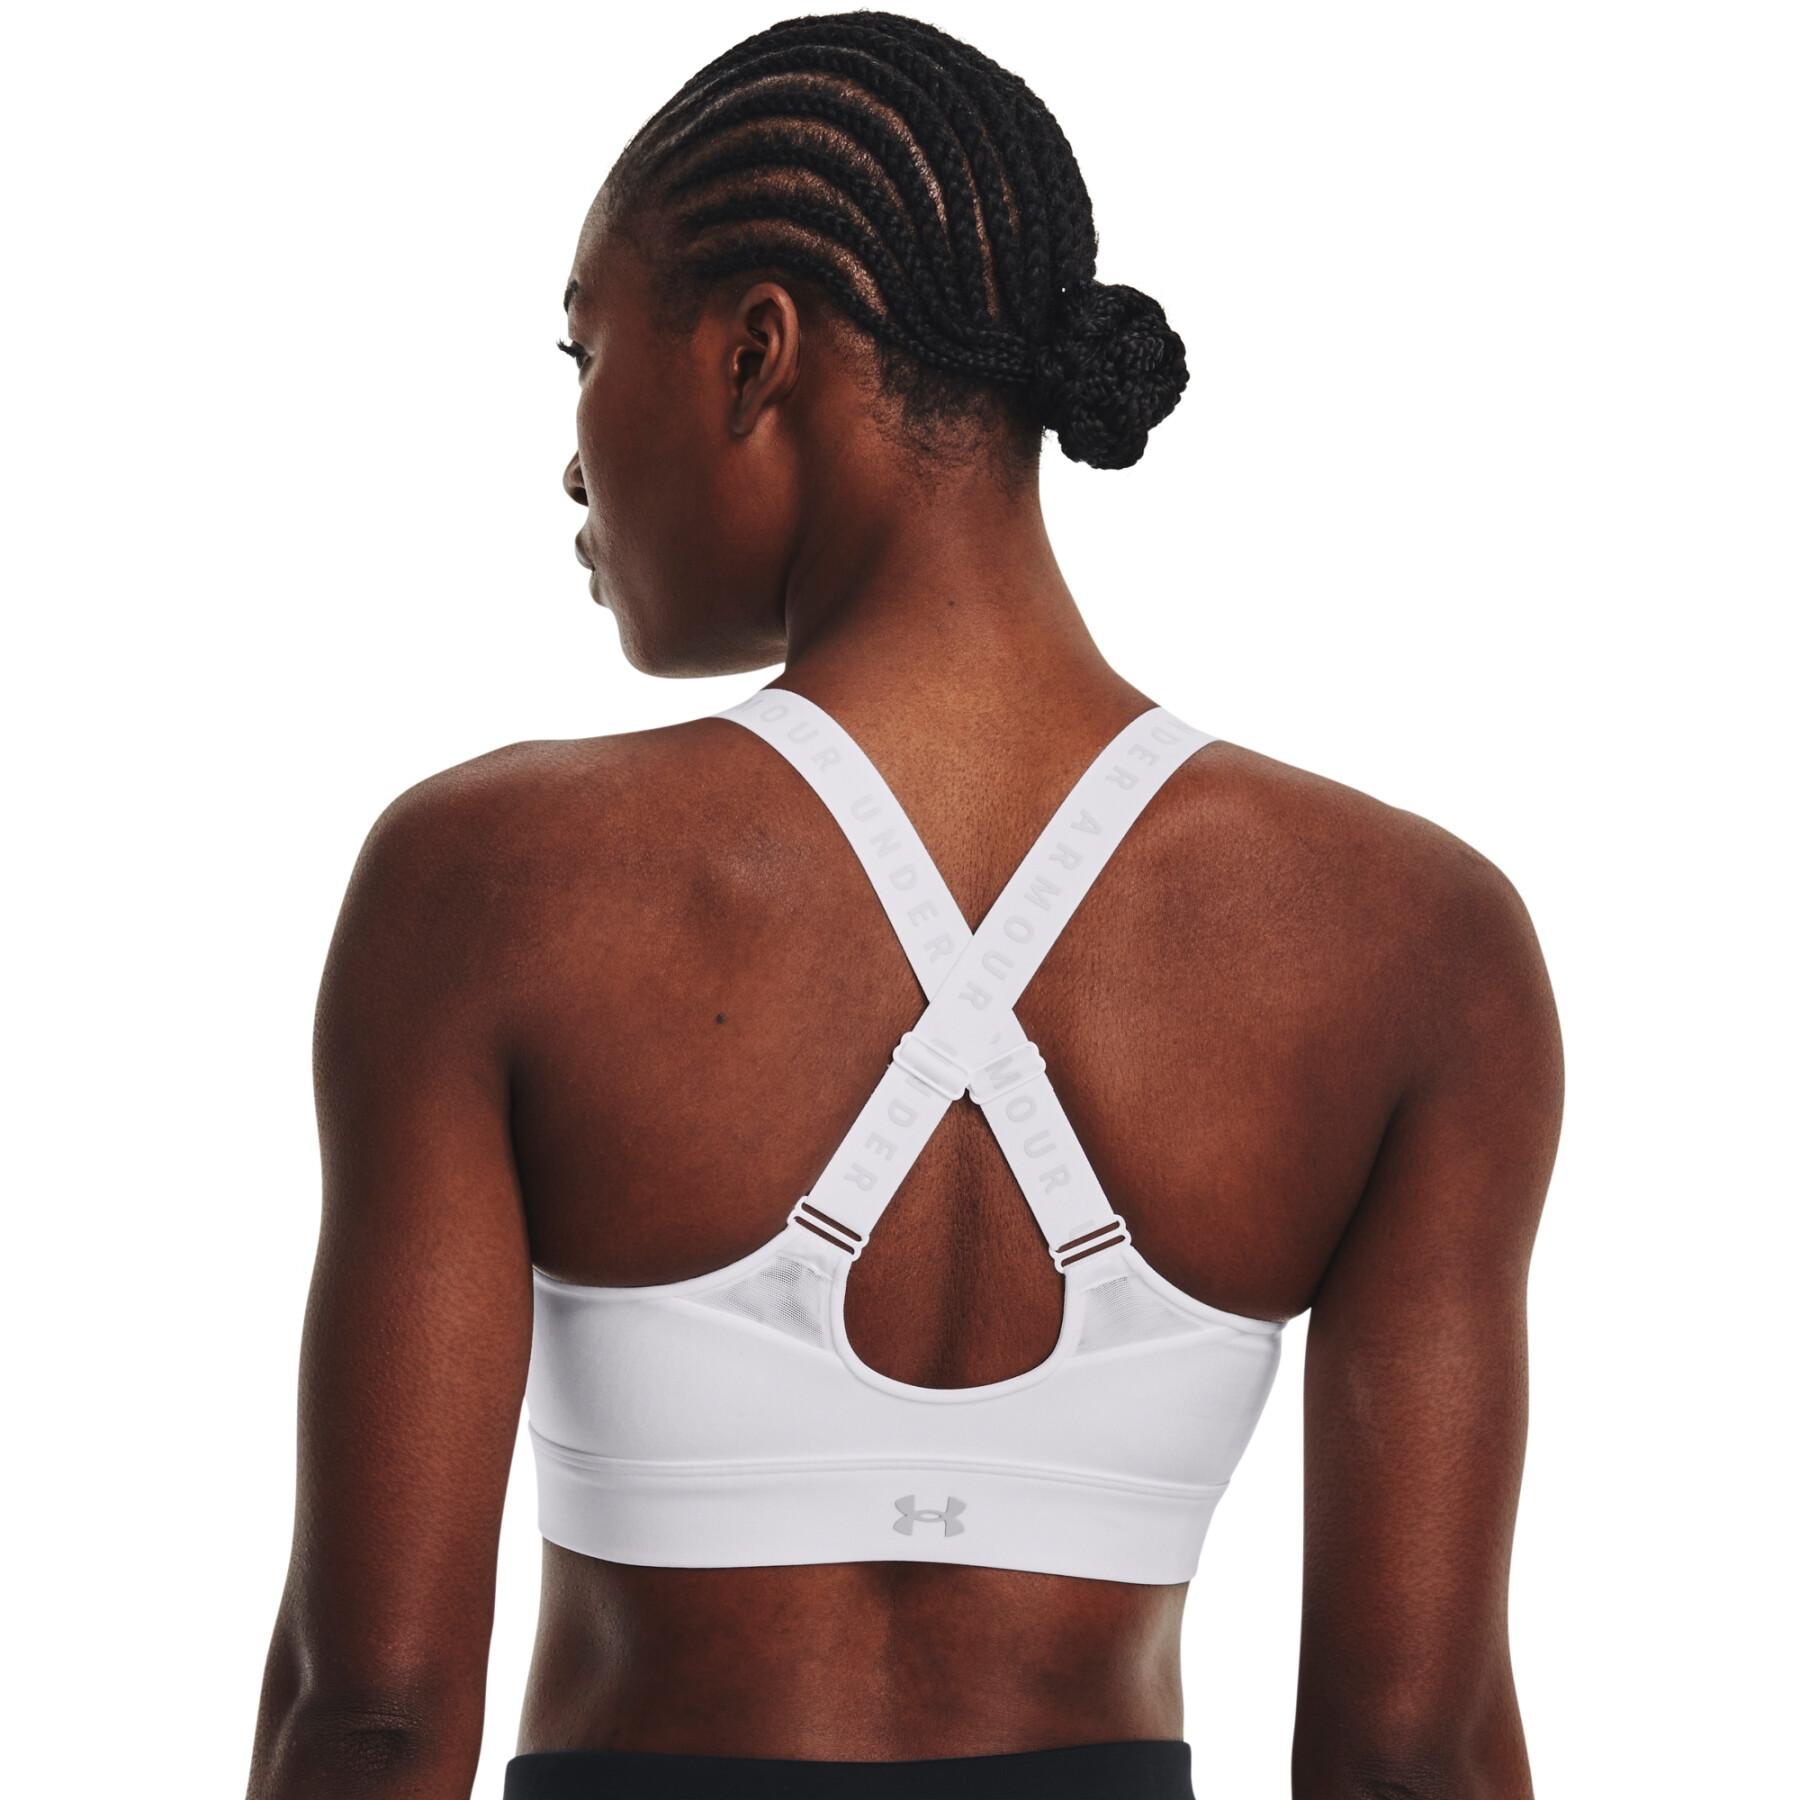 Women's zip-up bra Under Armour Infinity